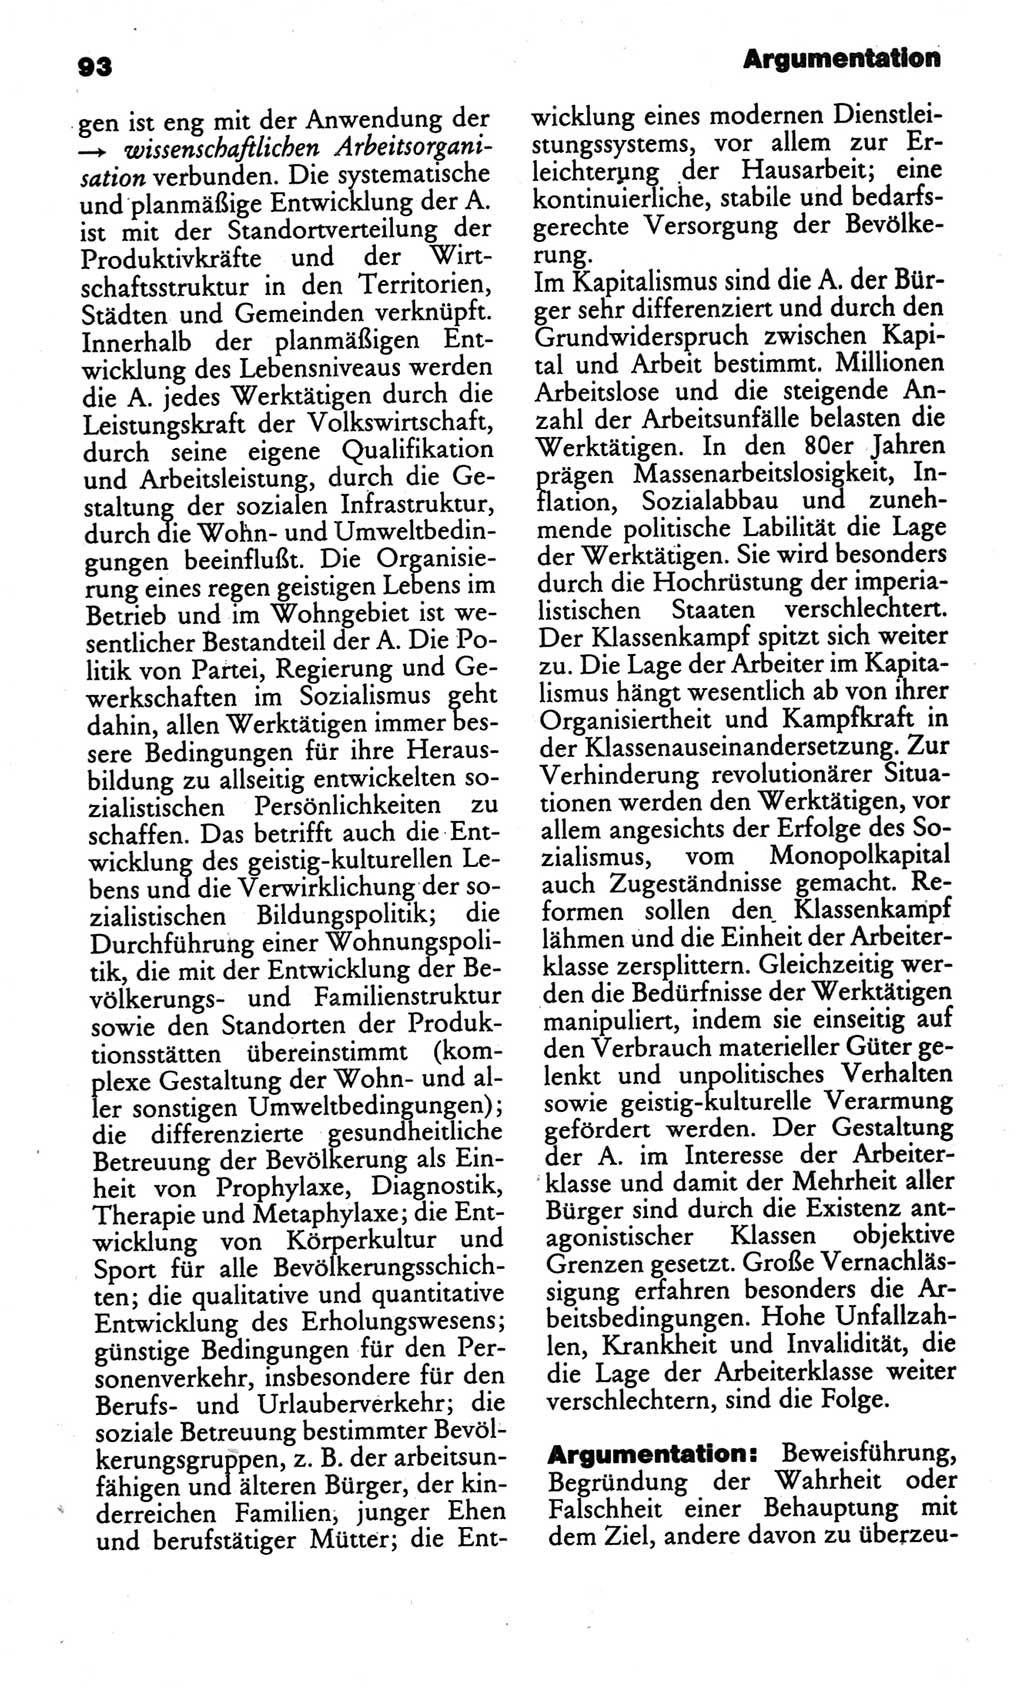 Kleines politisches Wörterbuch [Deutsche Demokratische Republik (DDR)] 1986, Seite 93 (Kl. pol. Wb. DDR 1986, S. 93)